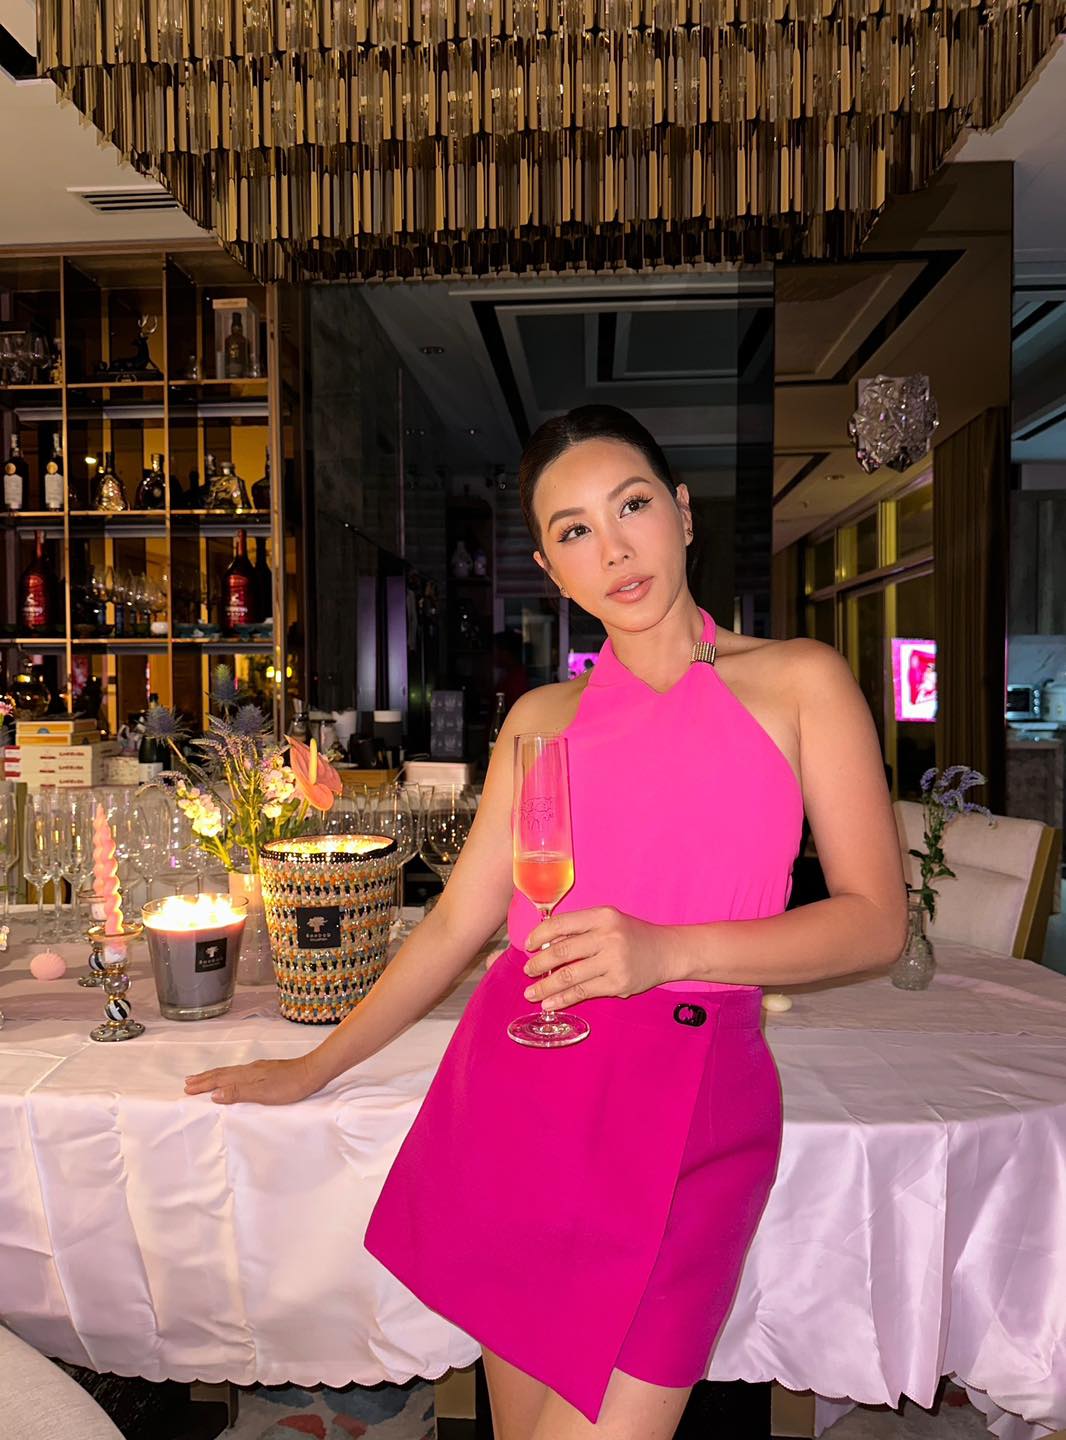 Nhan sắc gợi cảm tuổi U50 của "Hoa hậu thơm nhất showbiz Việt", sống giàu sang trong dinh thự như lâu đài